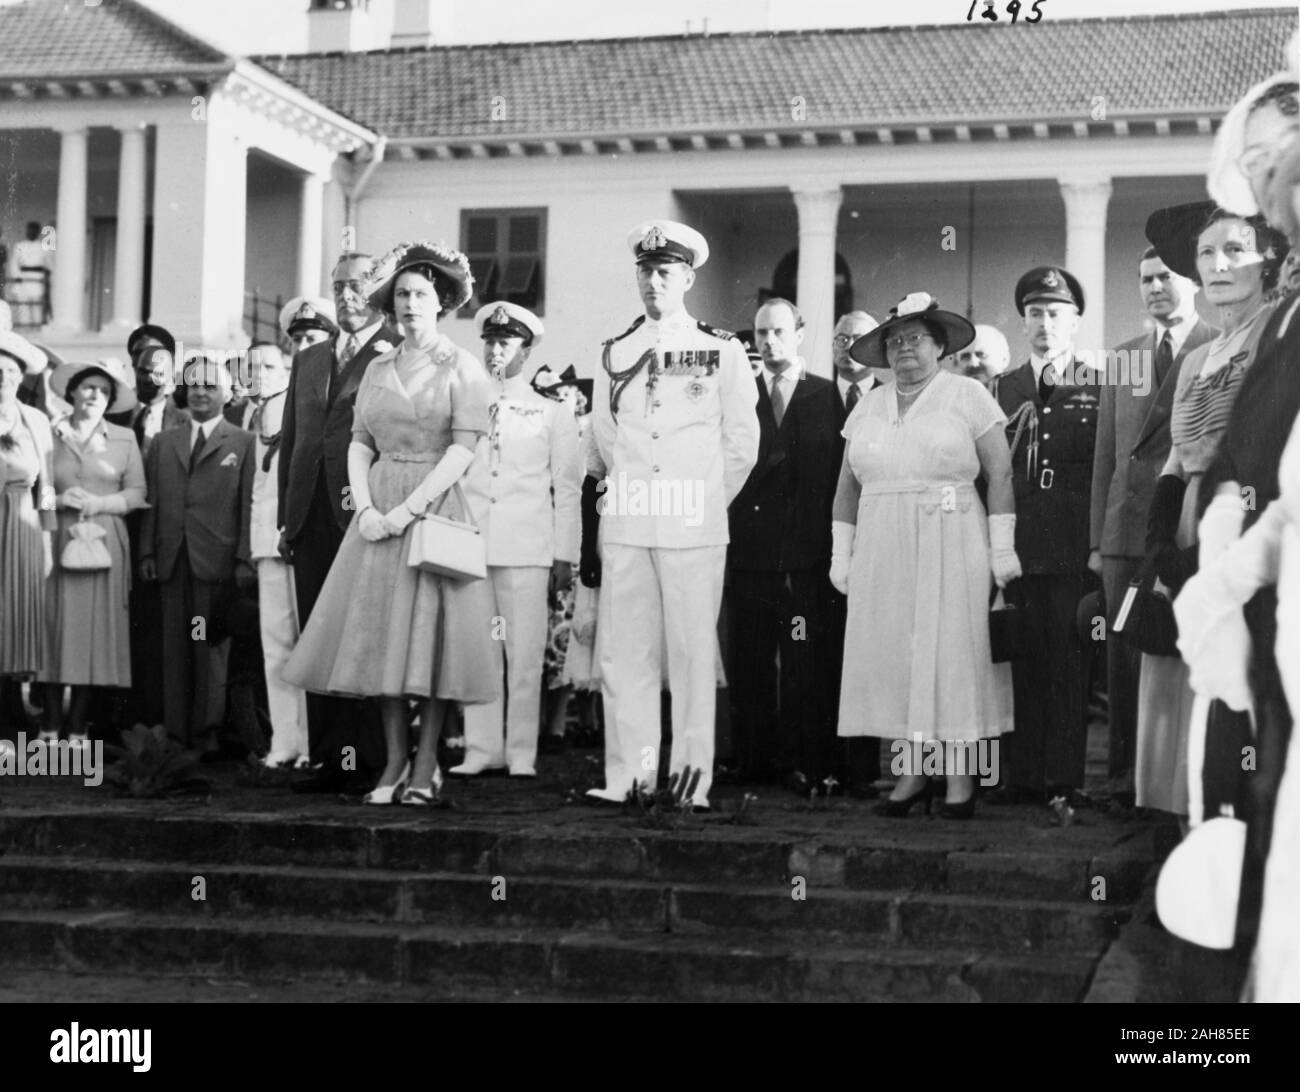 Kenia, Prinzessin Elizabeth und der Herzog von Edinburgh und eine grosse Menge an Zuschauern, darunter Lady Mitchell und drei uniformierte Beamte stand auf der Treppe vor das Government House, Nairobi, Februar 1952. 2001/090/1/4/1/26. Stockfoto